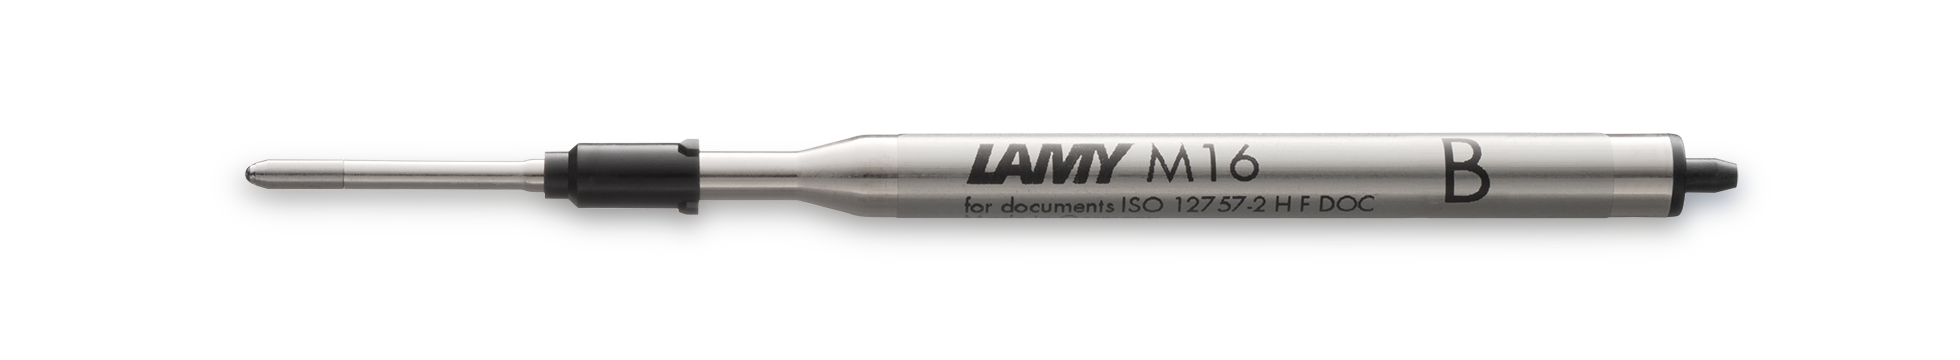 Lamy M16 Kugelschreiber-Mine 